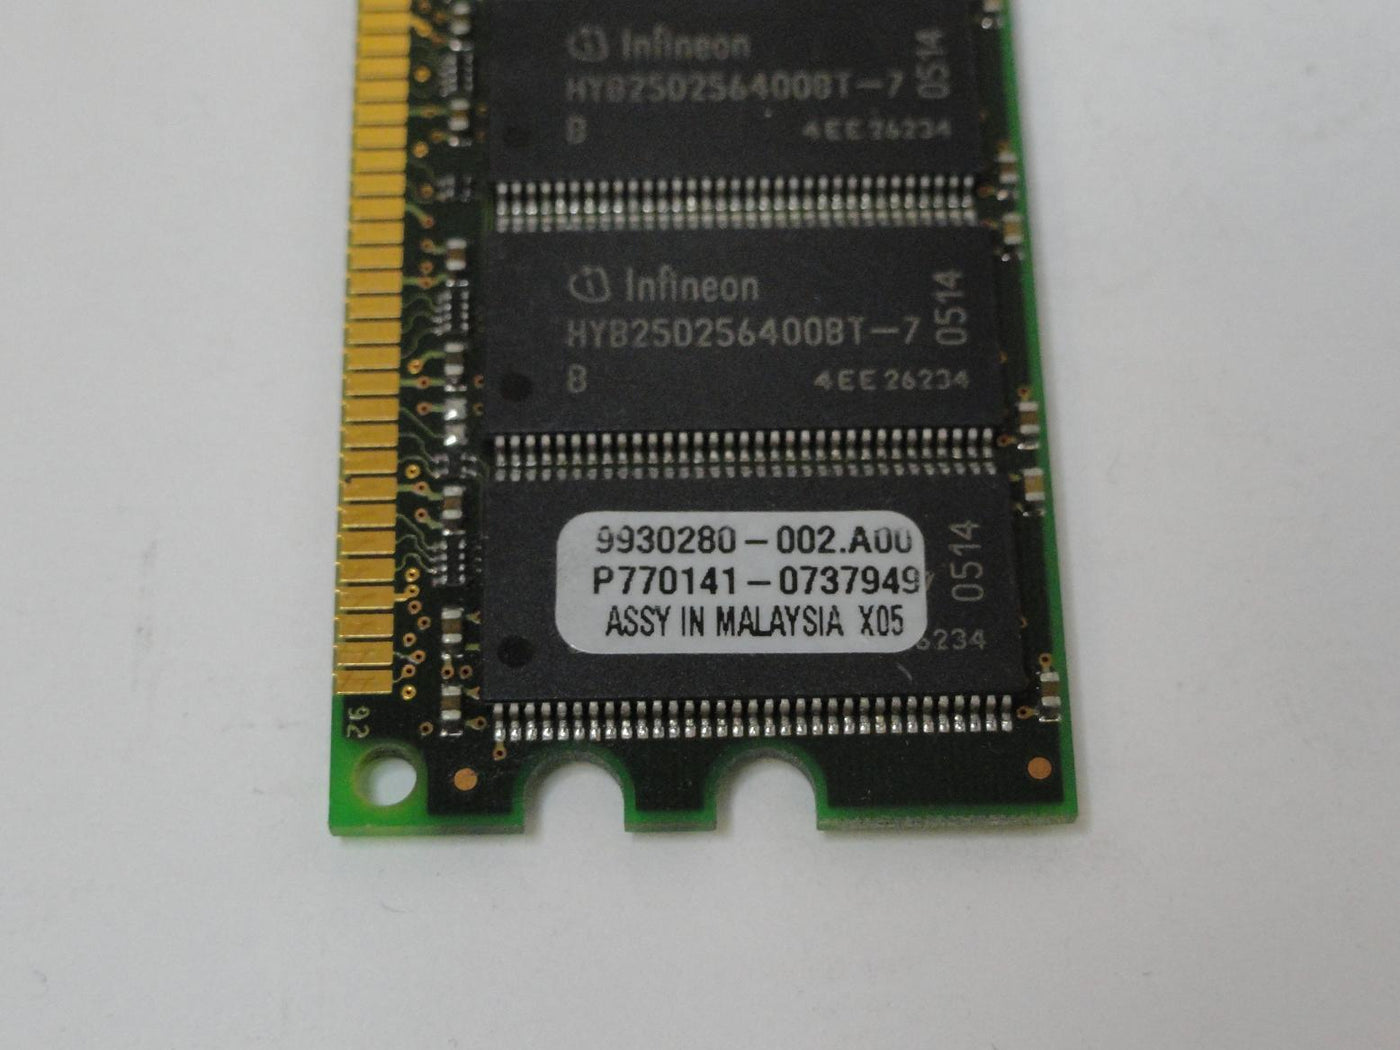 PR25358_9930280-002.A00_Kingston 512MB PC2100 DDR-266MHz DIMM RAM - Image3